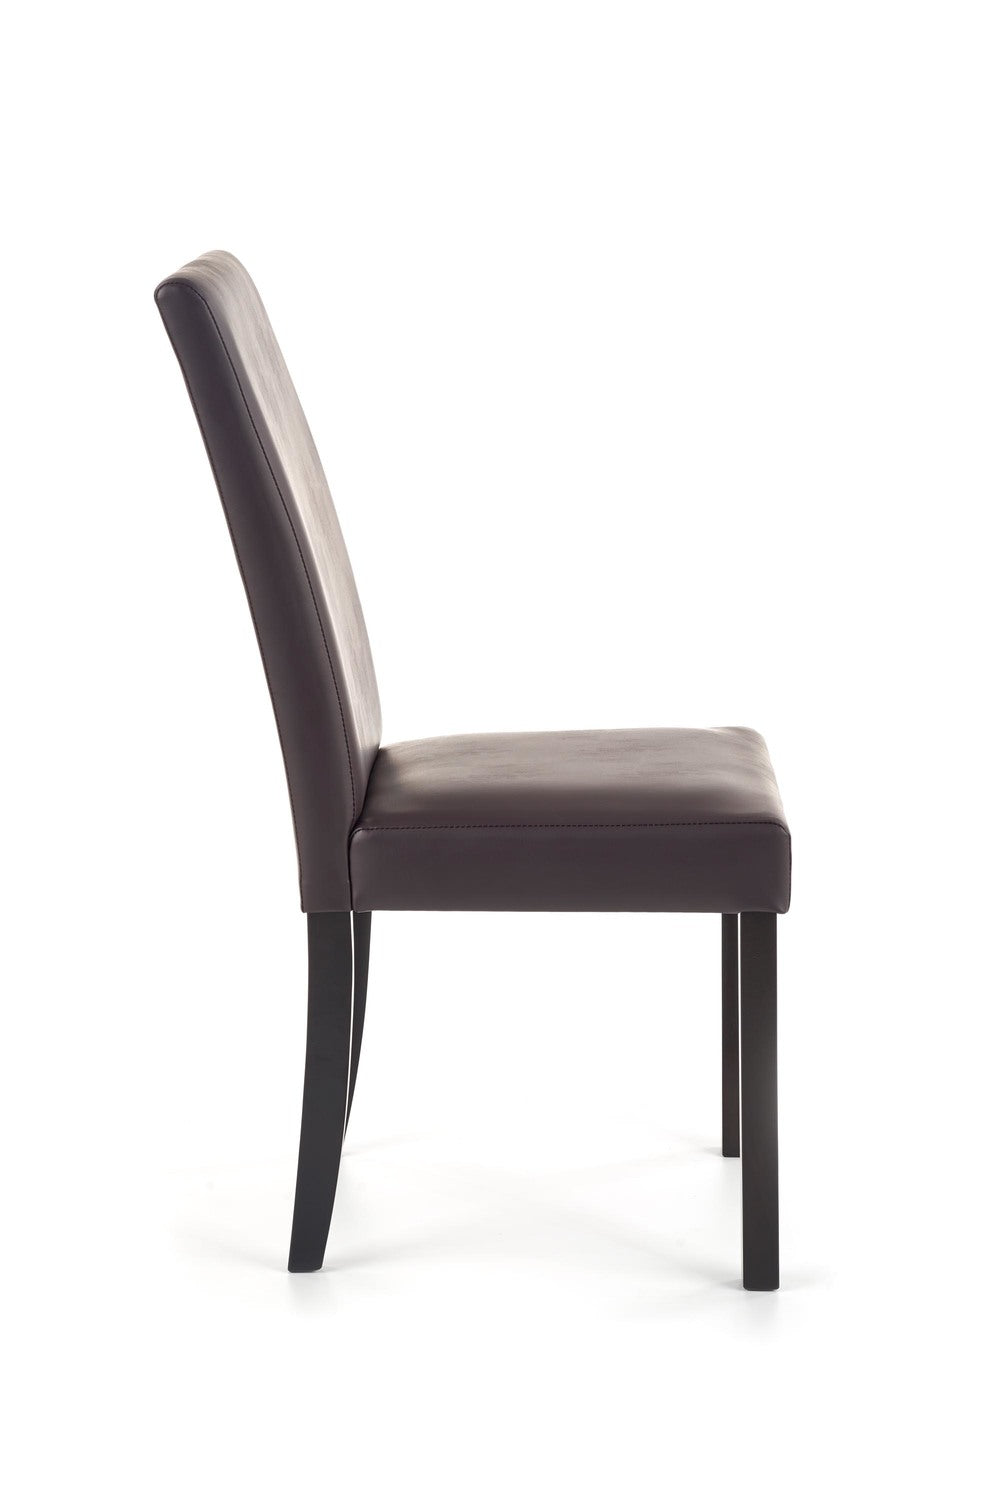 Krēsls Larzo 43/48/91 cm tumši brūns - N1 Home